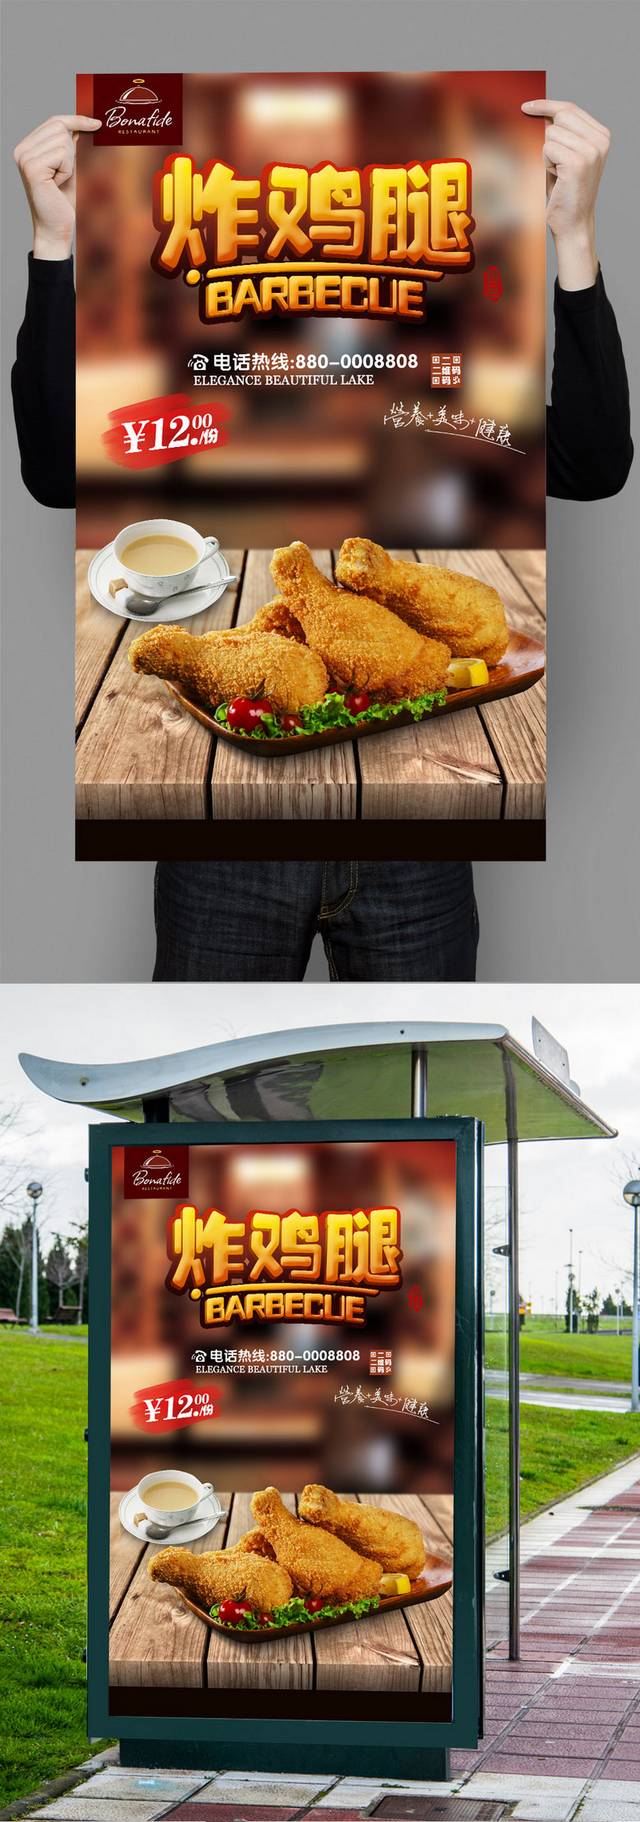 高清炸鸡宣传海报设计模板